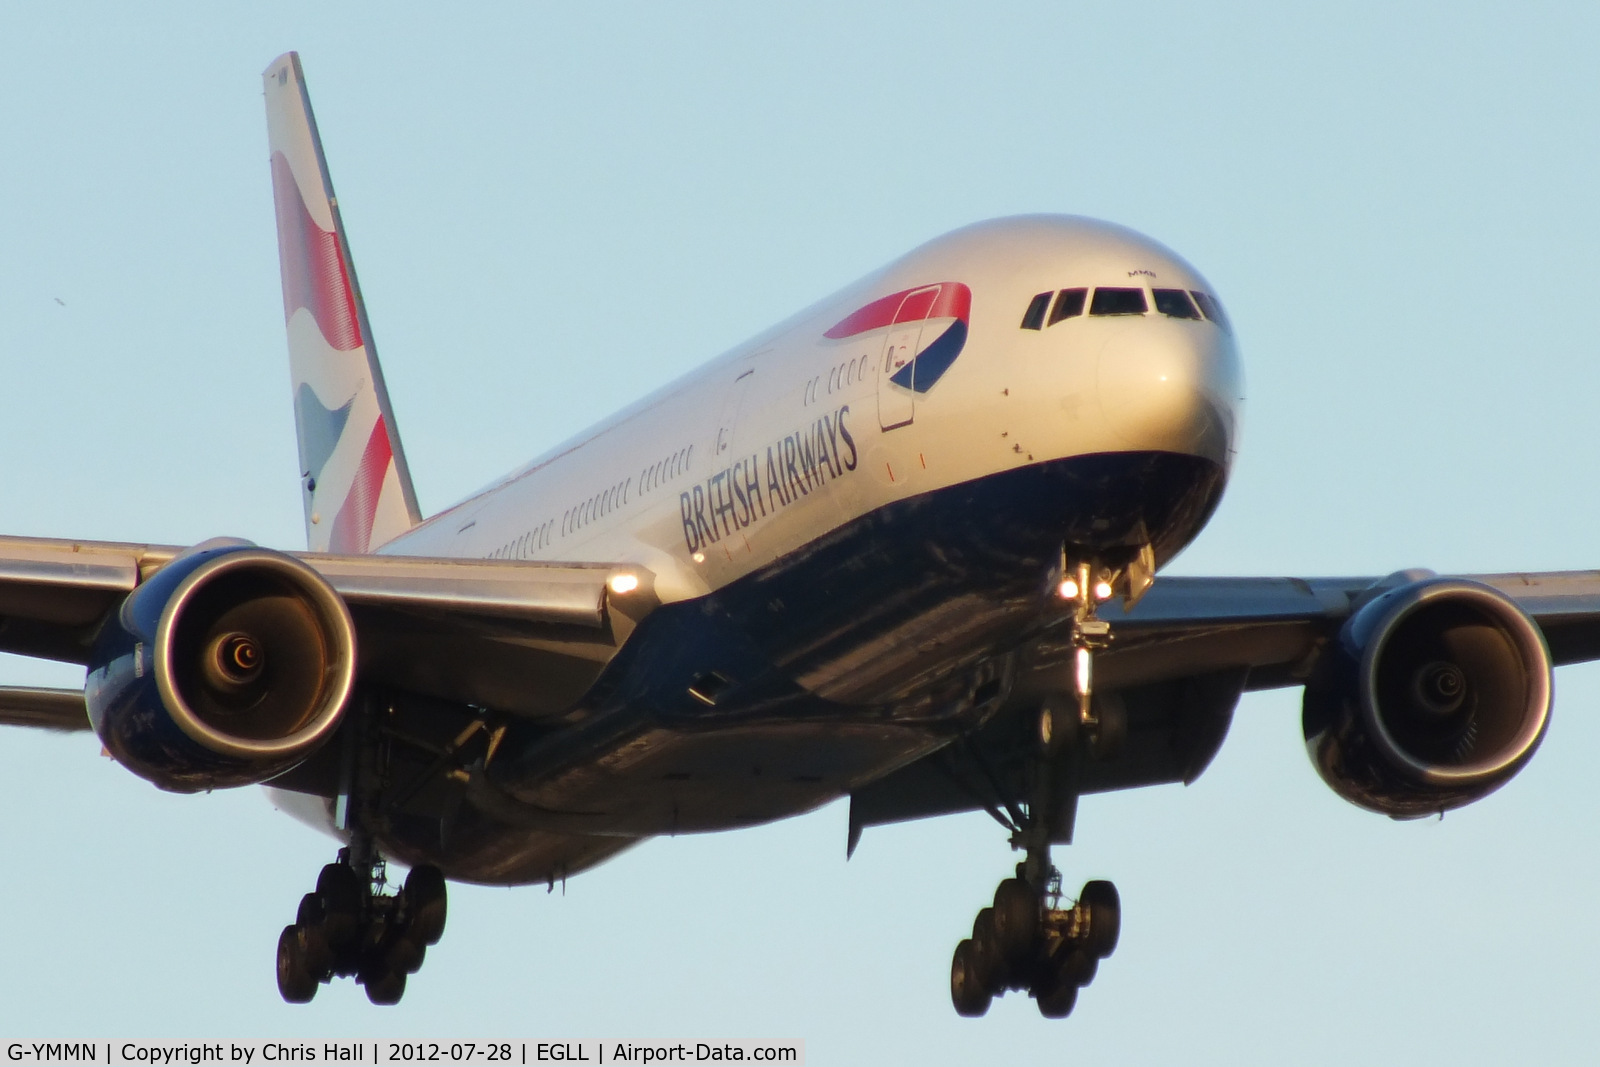 G-YMMN, 2001 Boeing 777-236 C/N 30316, British Airways